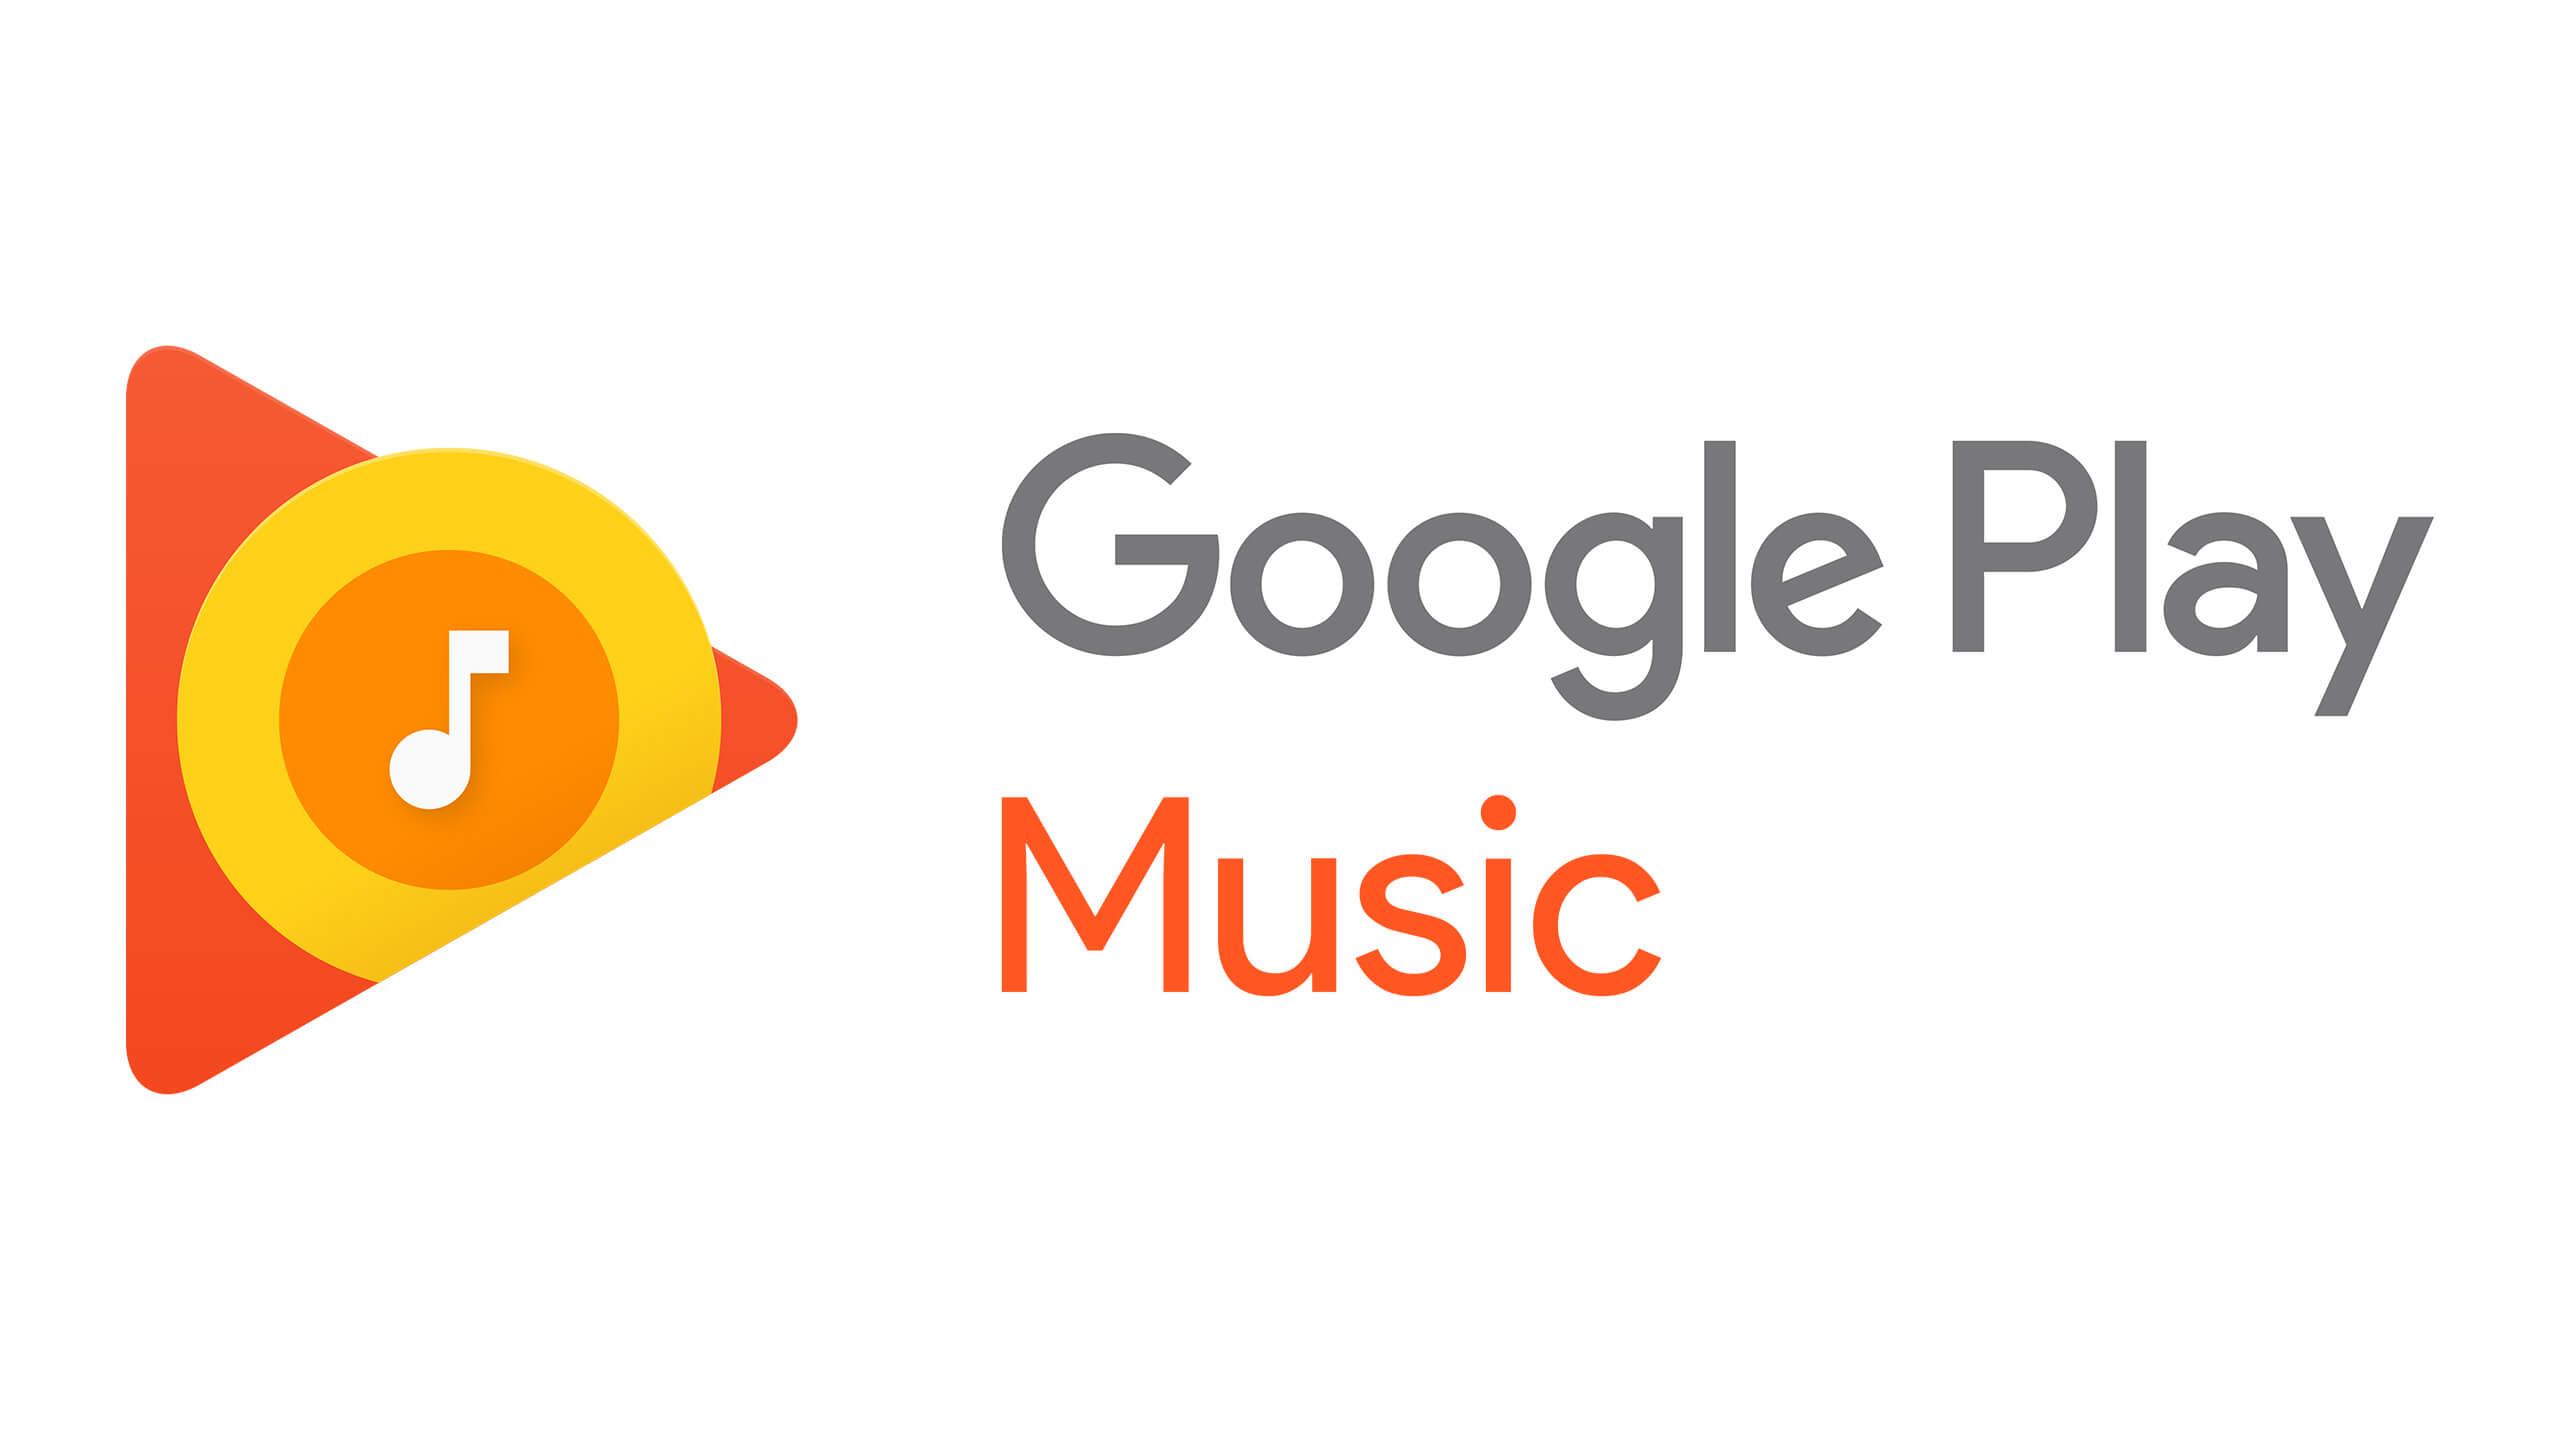 Cara Download Lagu di Google Play Music Dengan Cepat dan Mudah